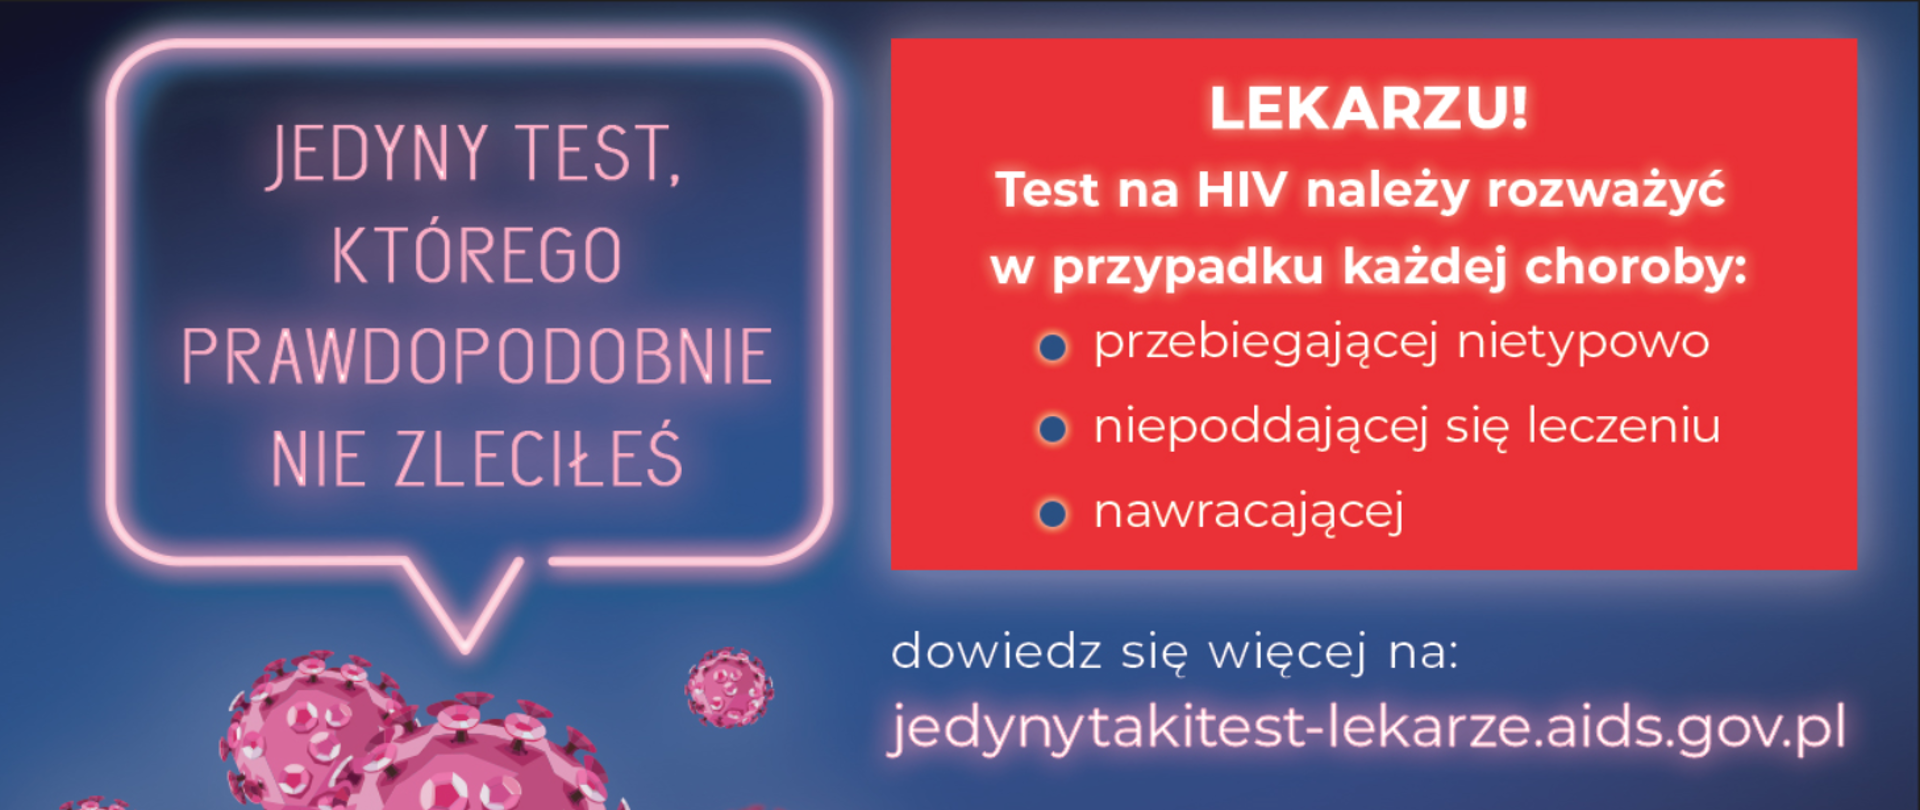 Kampania Krajowego Centrum ds. AIDS skierowana do środowiska medycznego